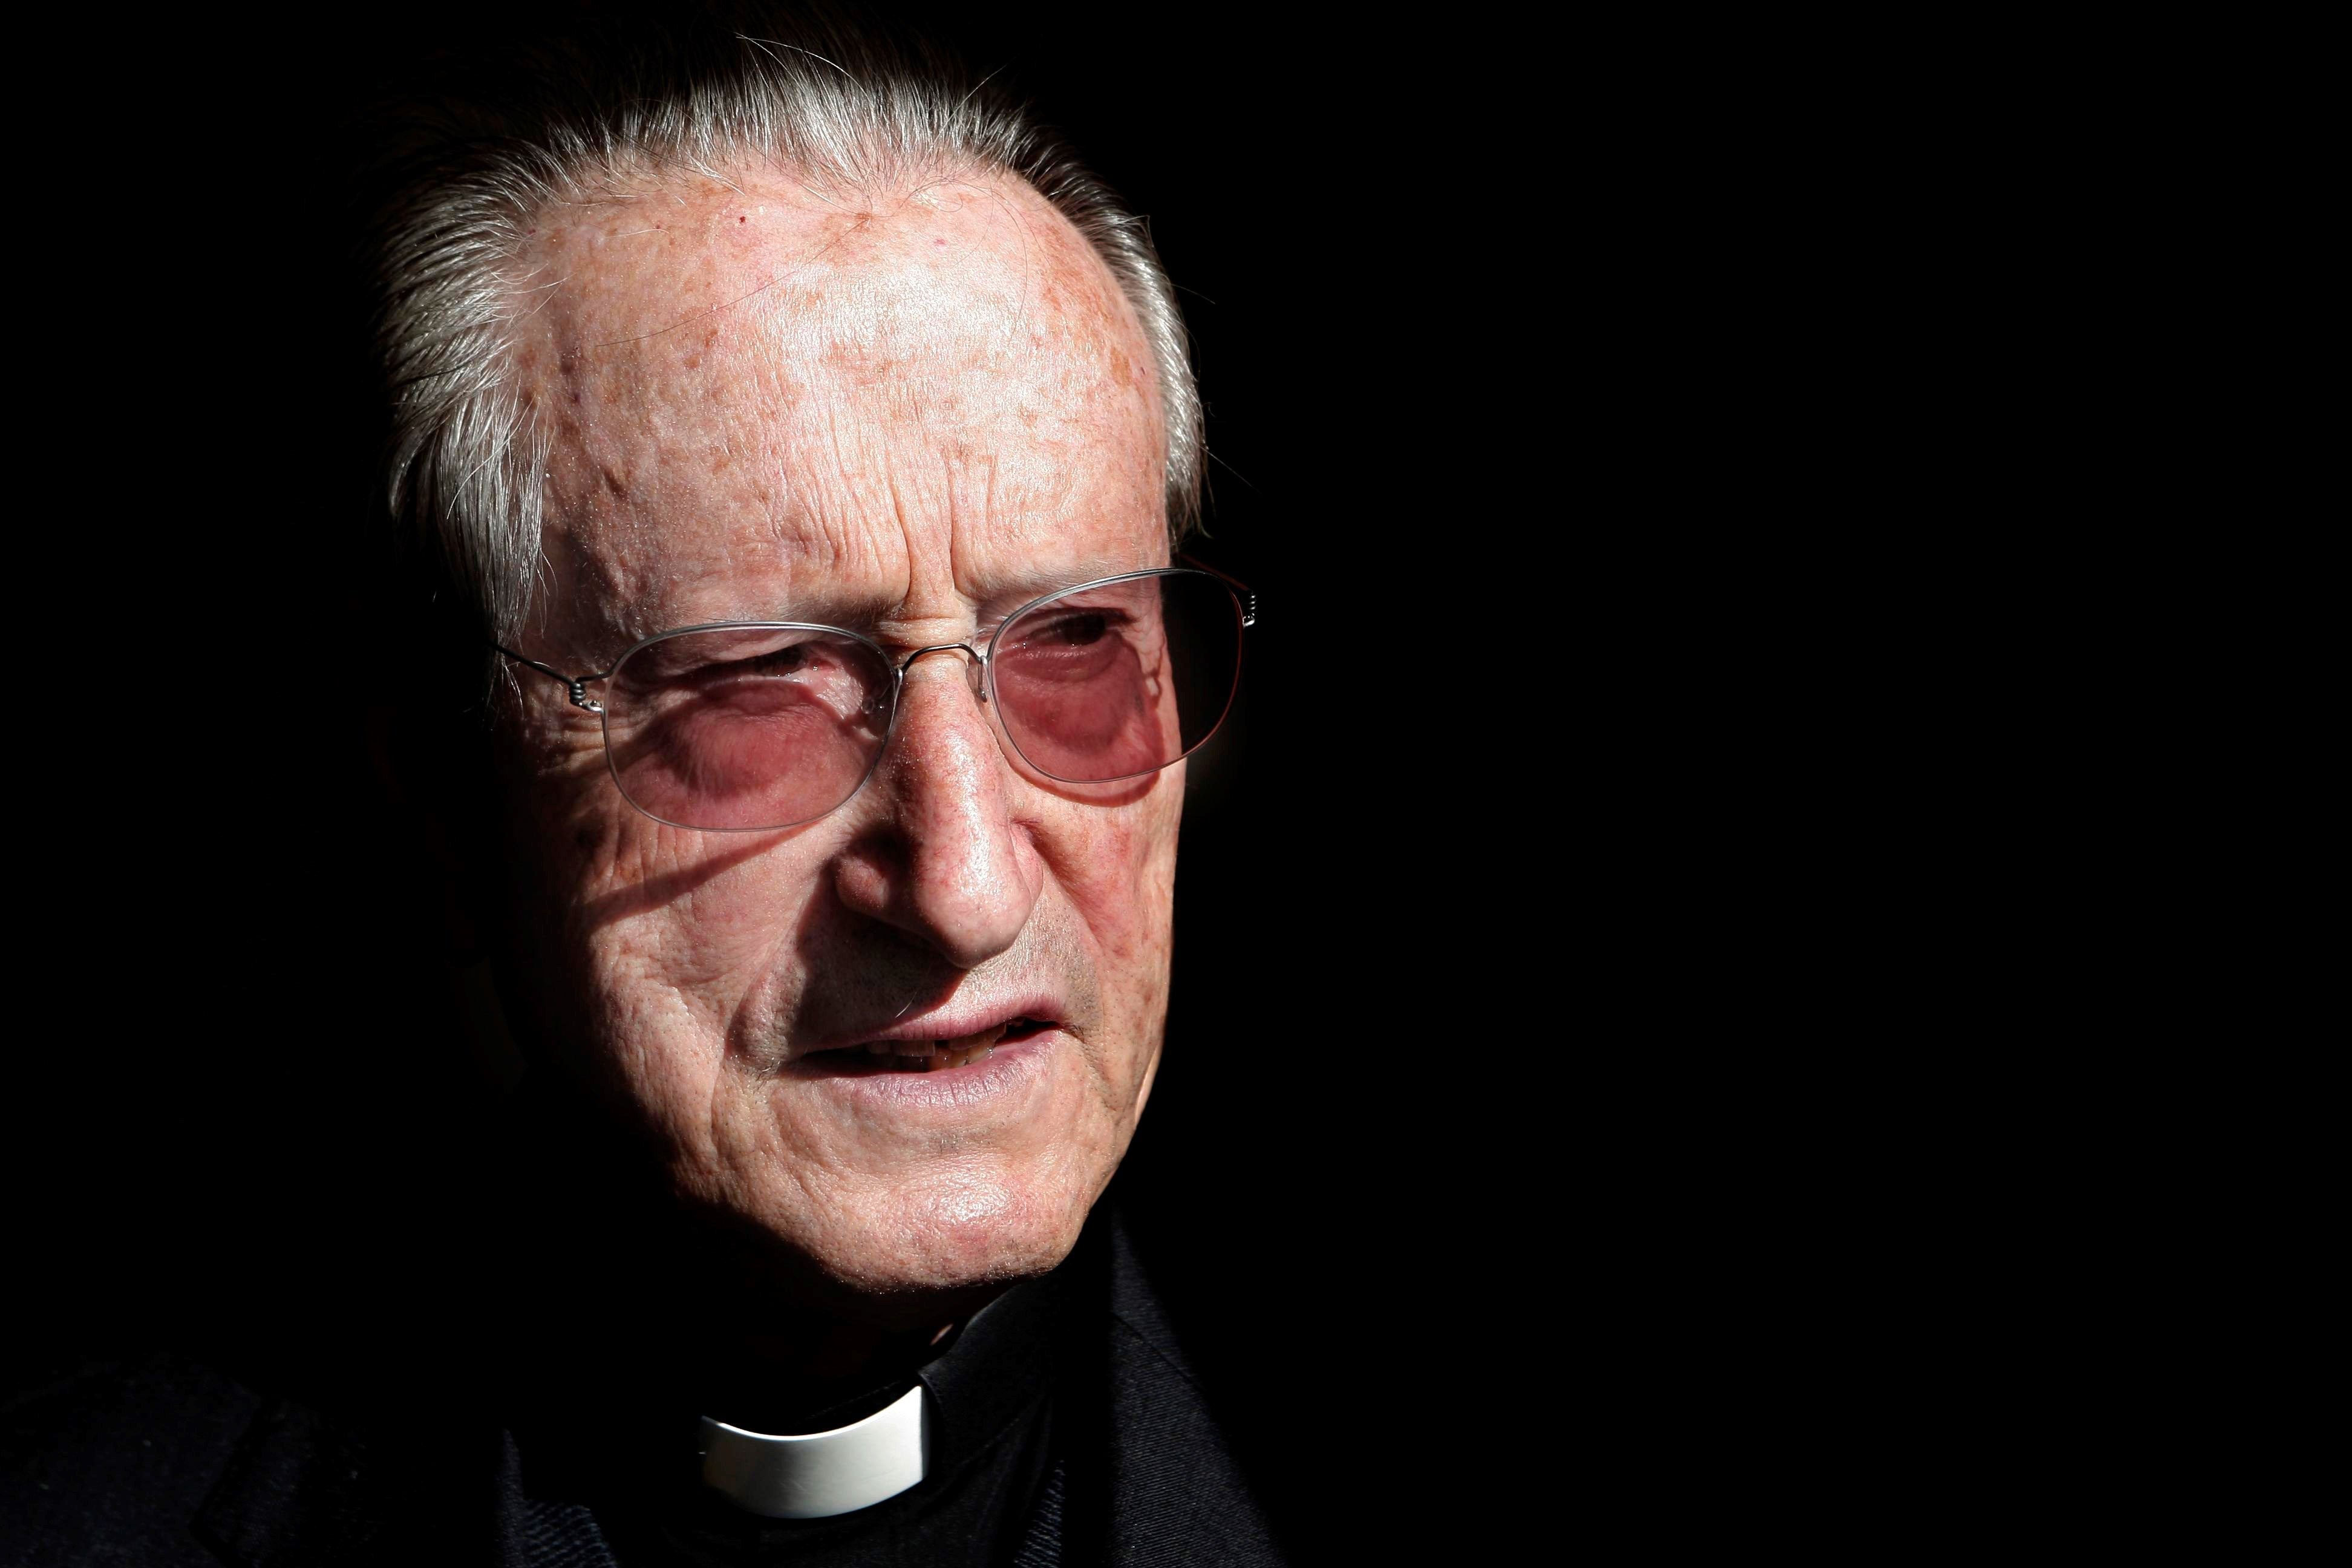 Mor als 90 anys el bisbe Setién, polèmic defensor del diàleg amb ETA